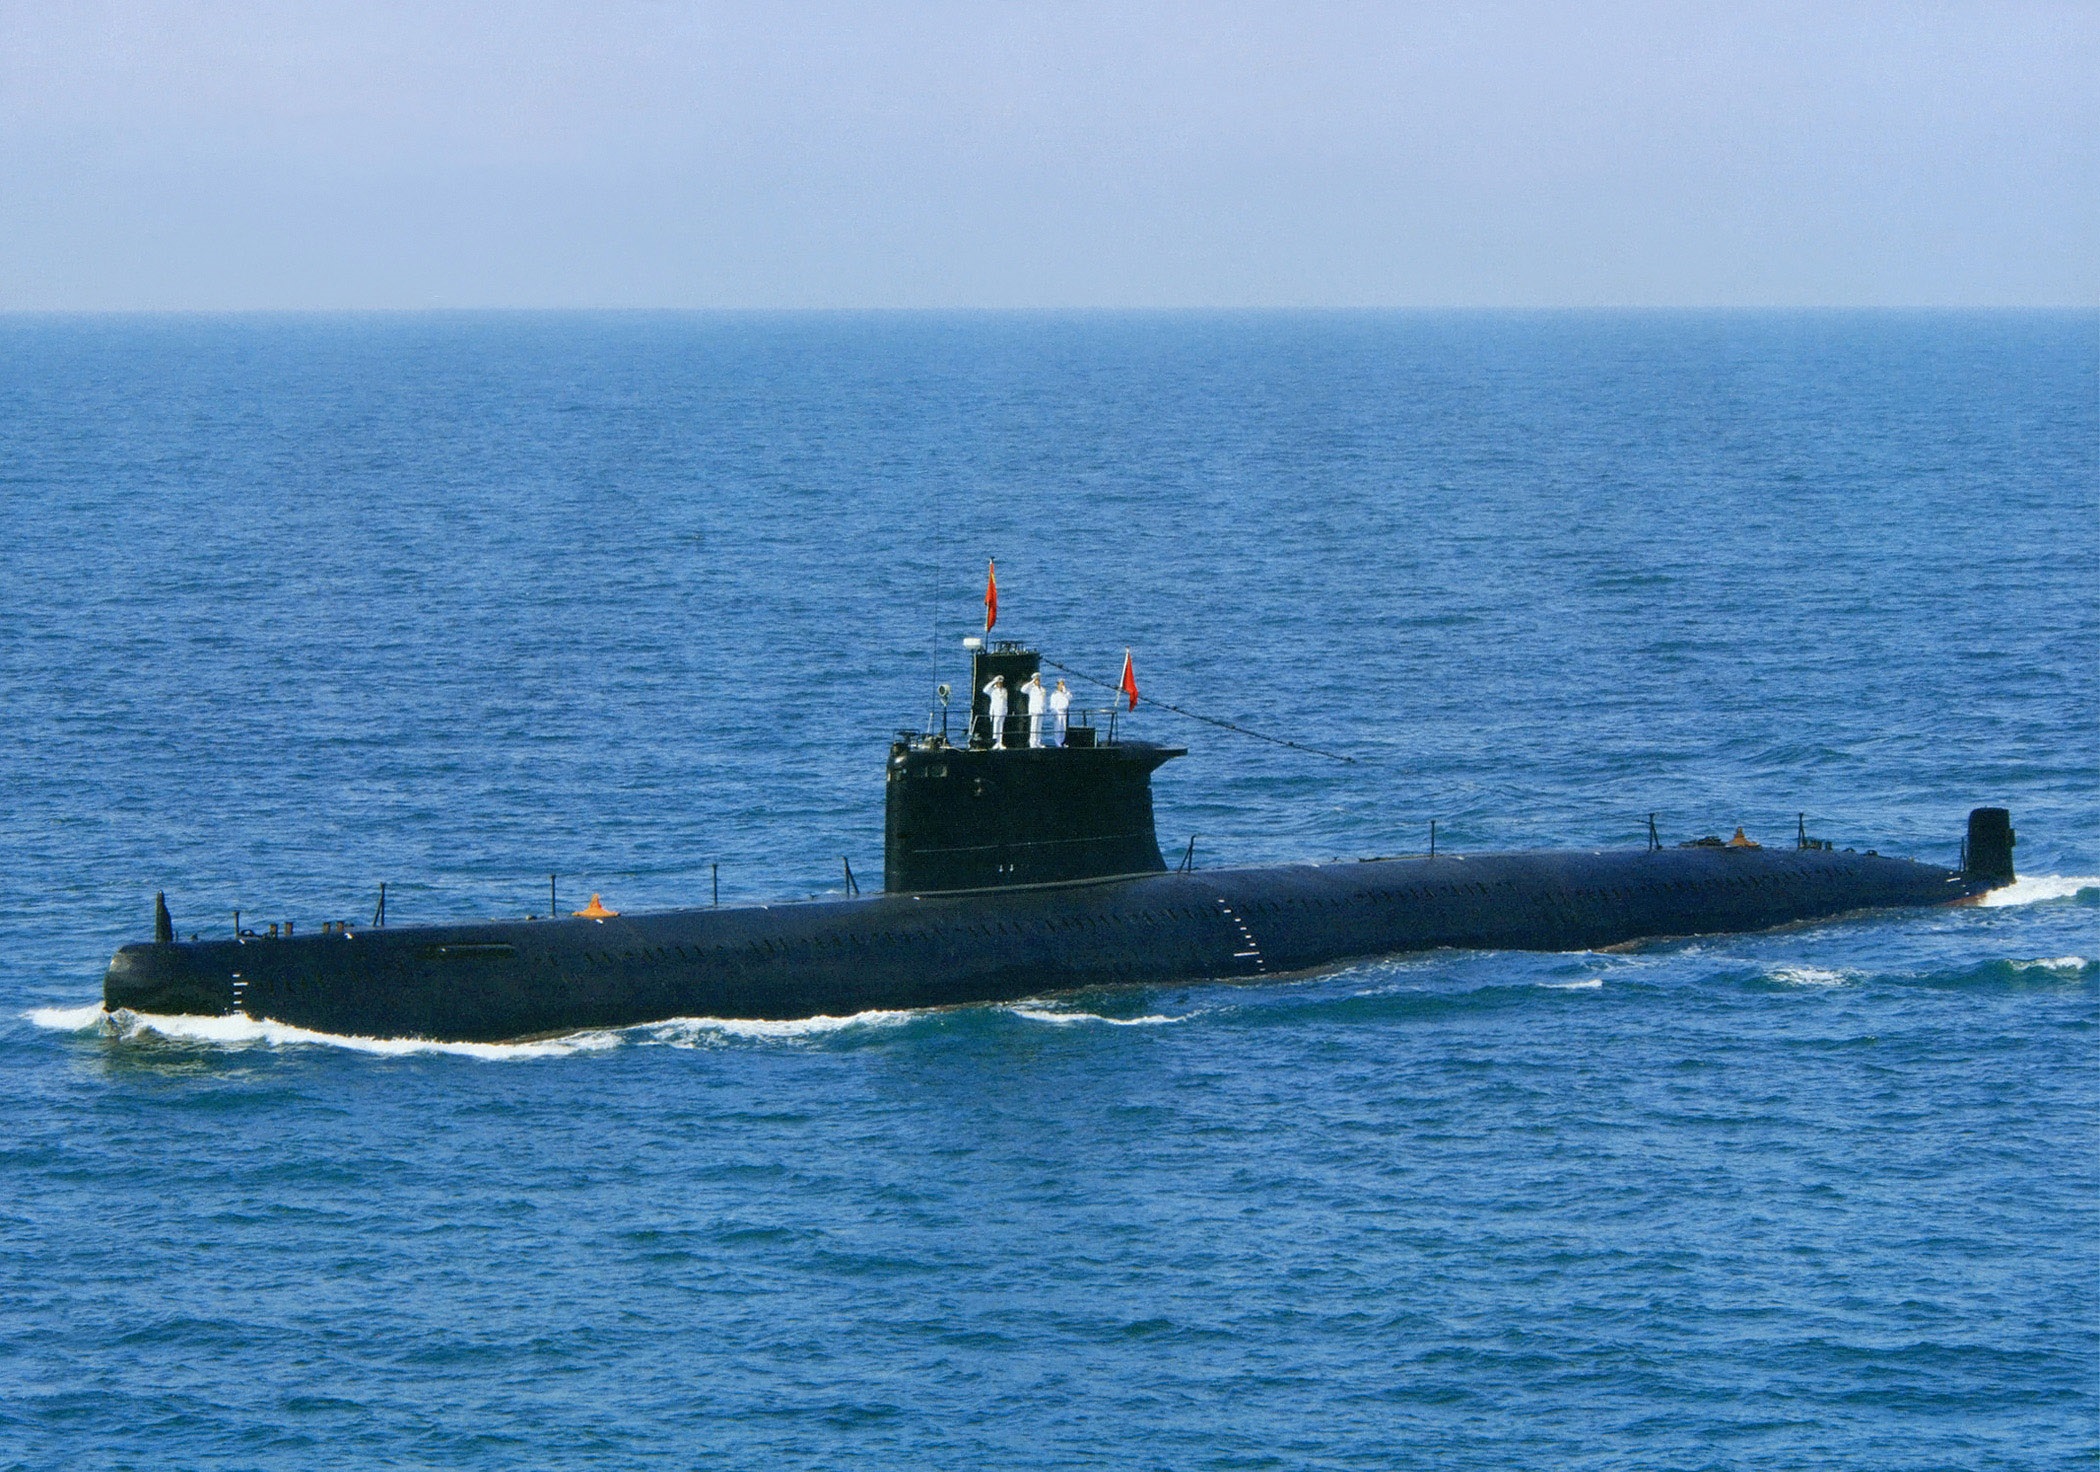 20世纪60年代,中国完成了033型潜艇的仿制国产化,实现了潜艇用材料